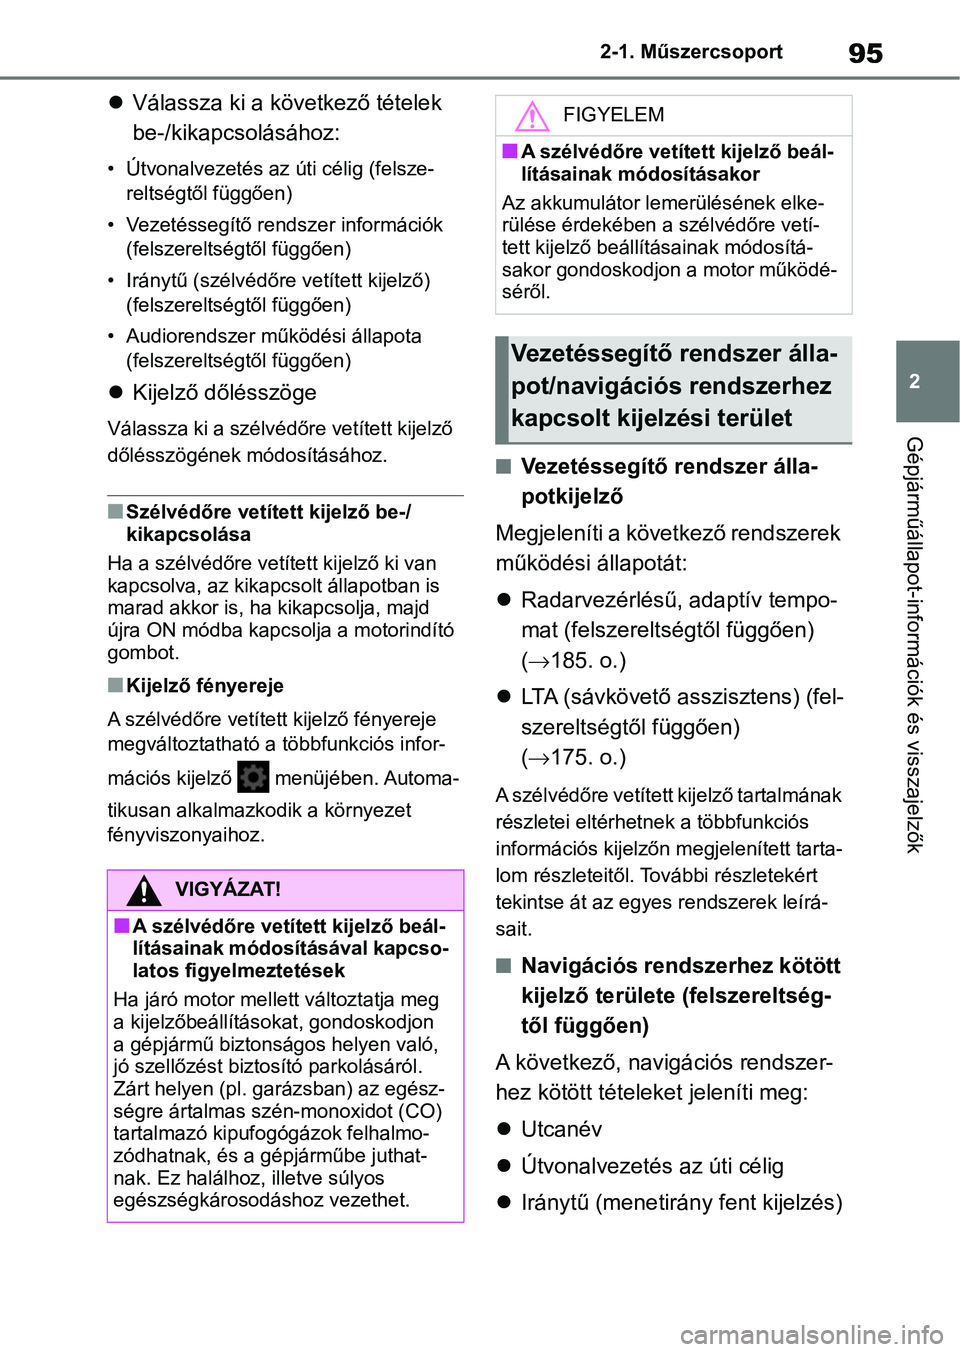 TOYOTA GR YARIS 2020  Kezelési útmutató (in Hungarian) 95
2
2-1. Műszercsoport
Gépjárműállapot-információk és visszajelzők

Válassza ki a következő tételek 
be-/kikapcsolásához:
• Útvonalvezetés az úti célig (felsze-
reltségtől f